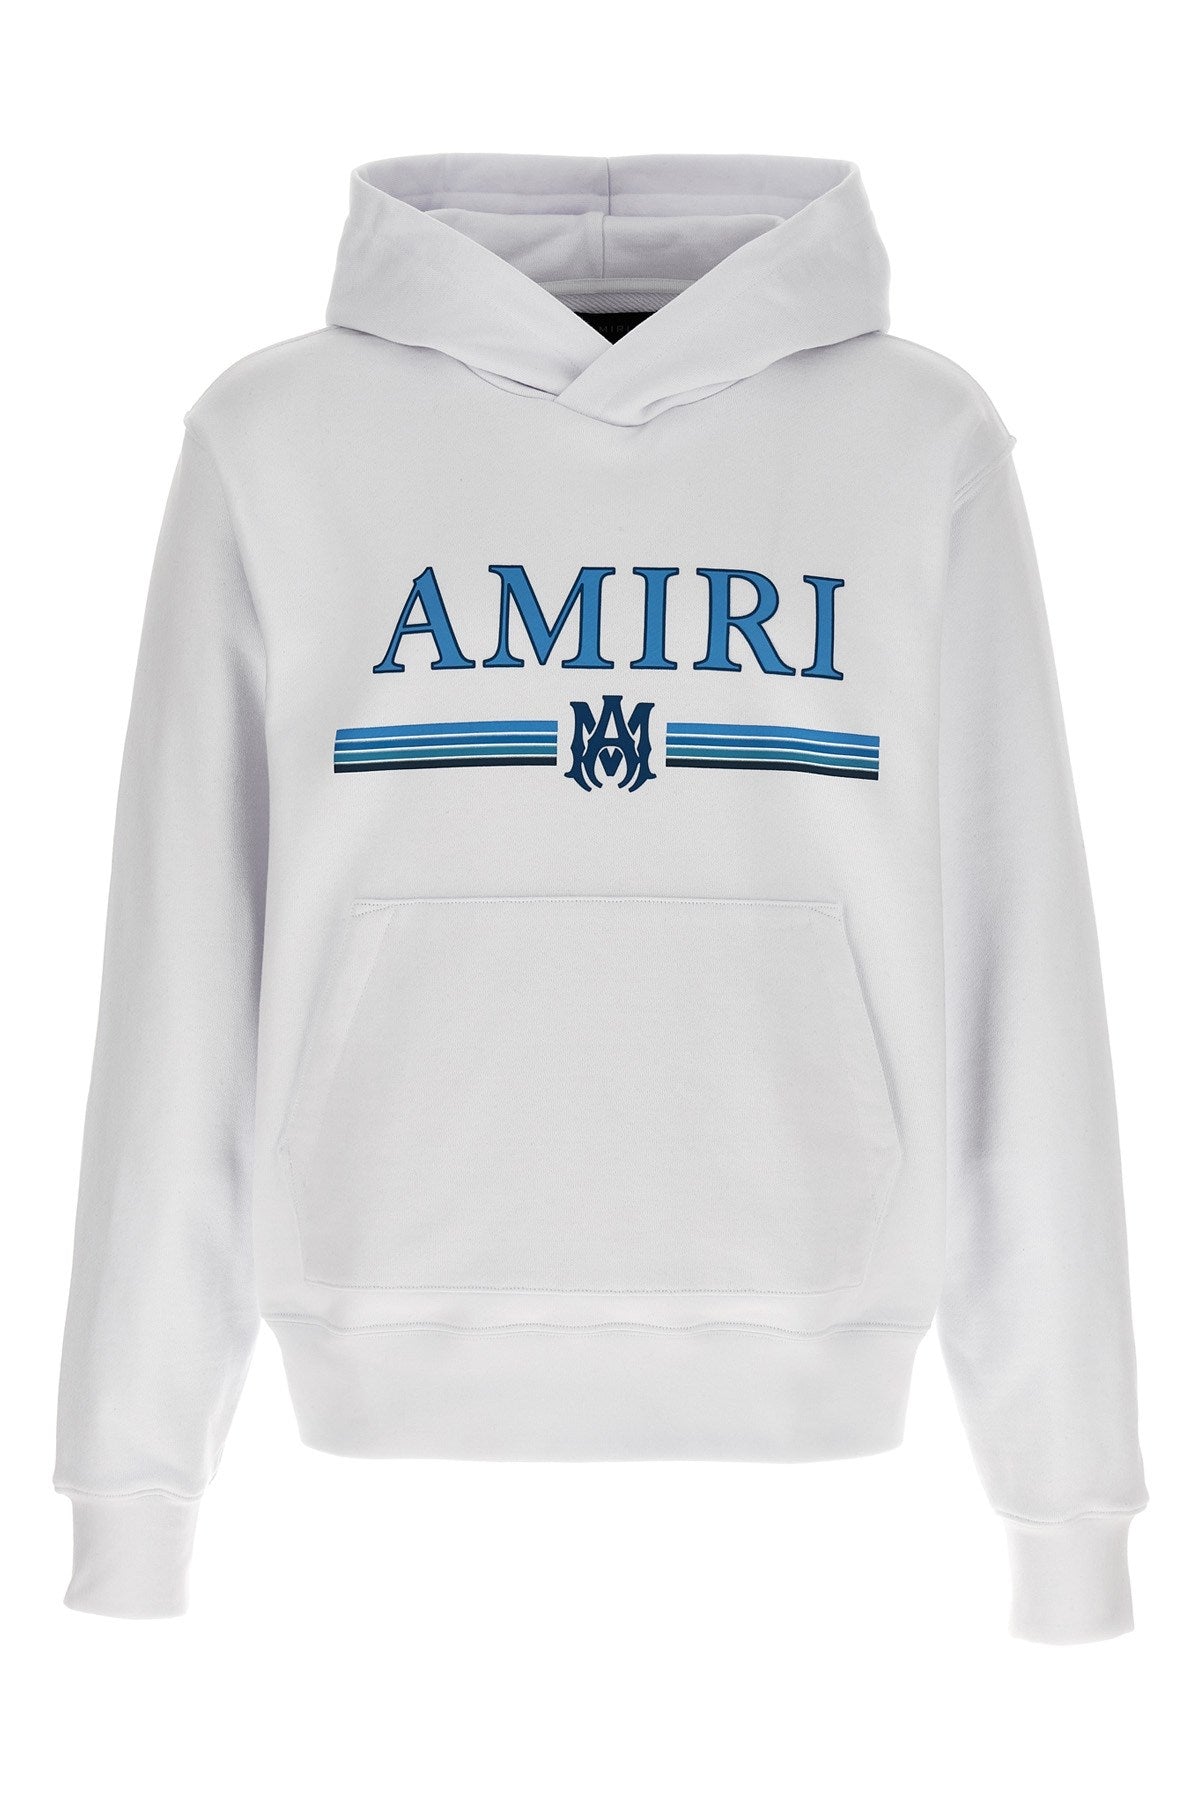 AMIRI 'MA Bar' hoodie white blue